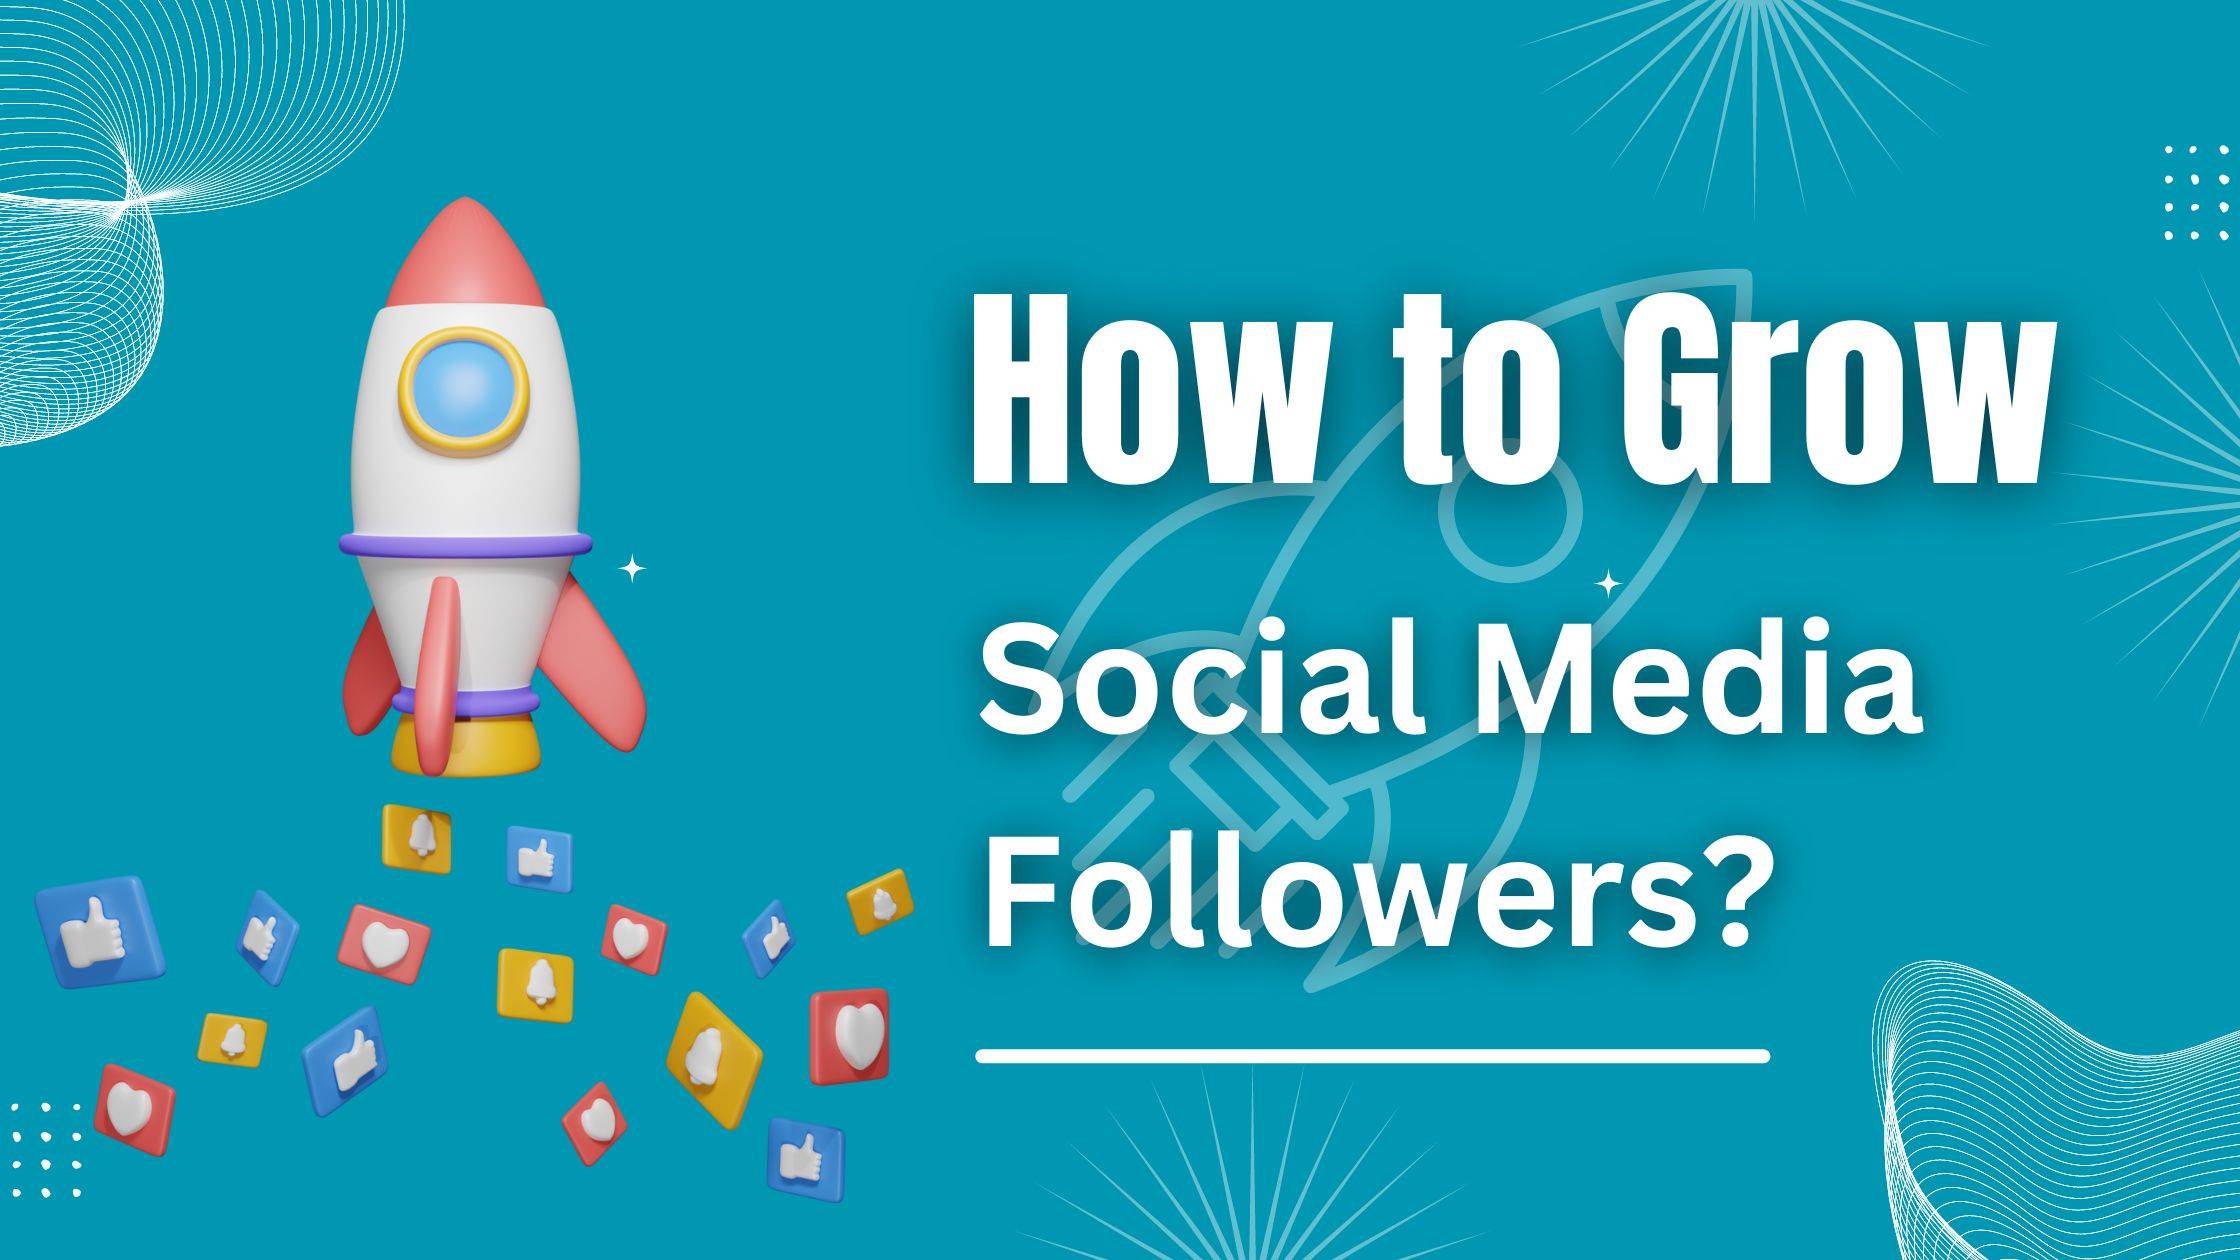 How to Grow Social Media Followers?